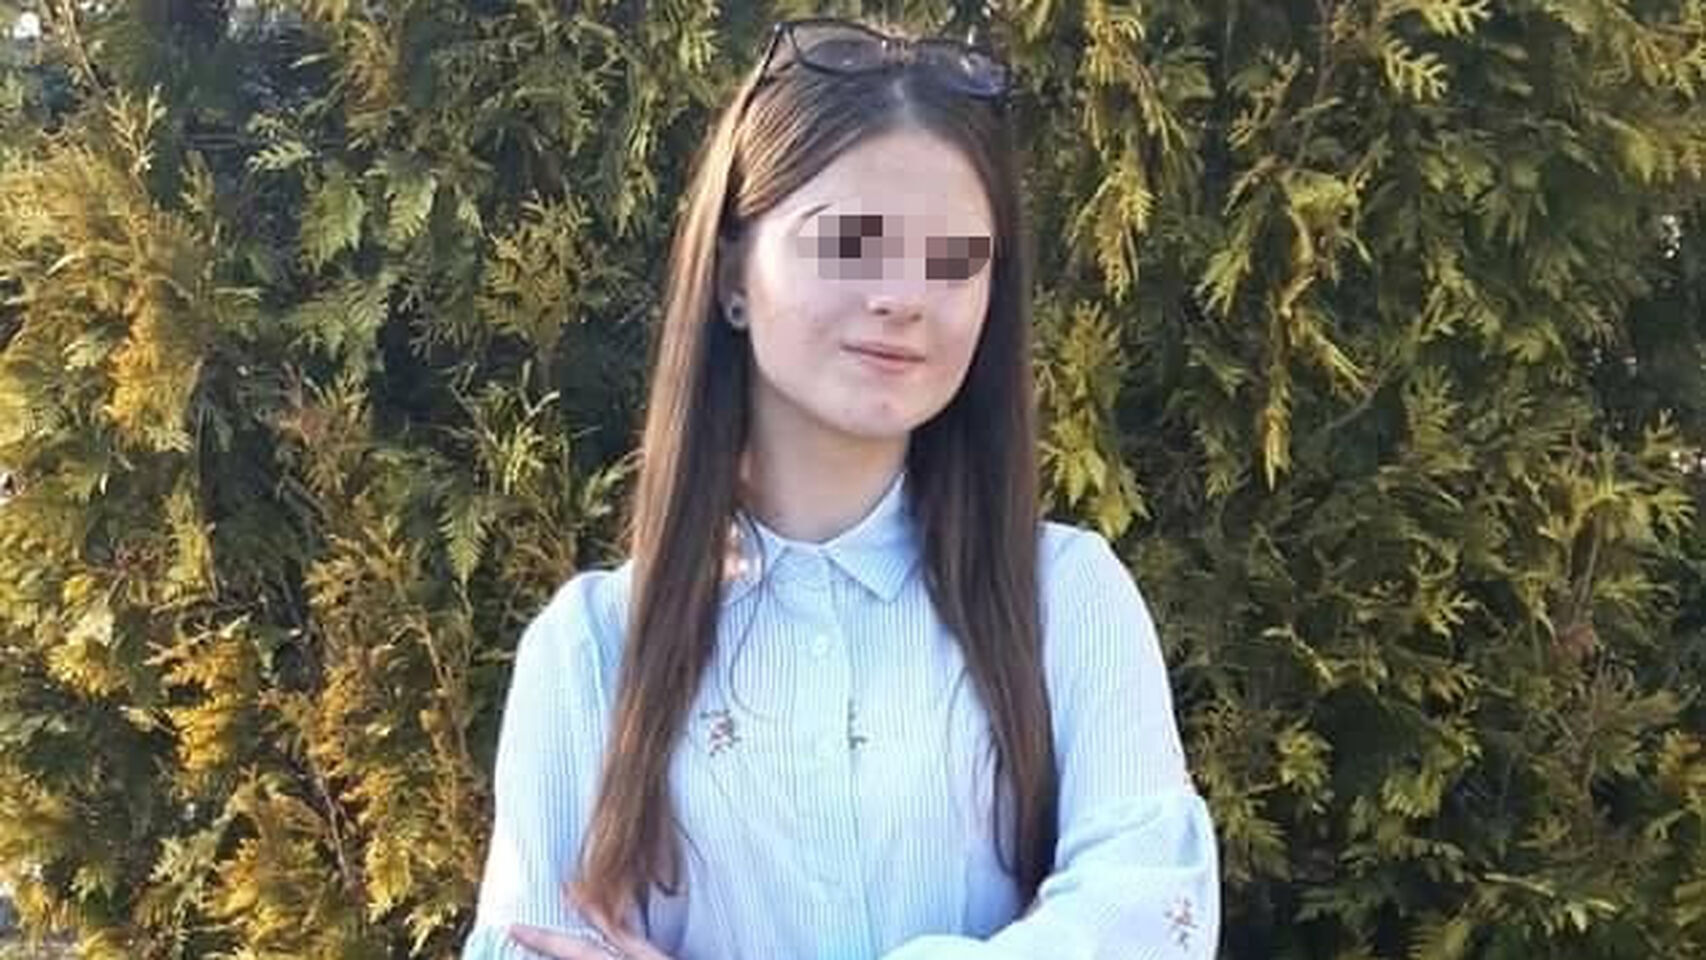 Alexandra Macesanu, la joven de 15 años secuestrada y asesinada en Rumanía por un mecánico.